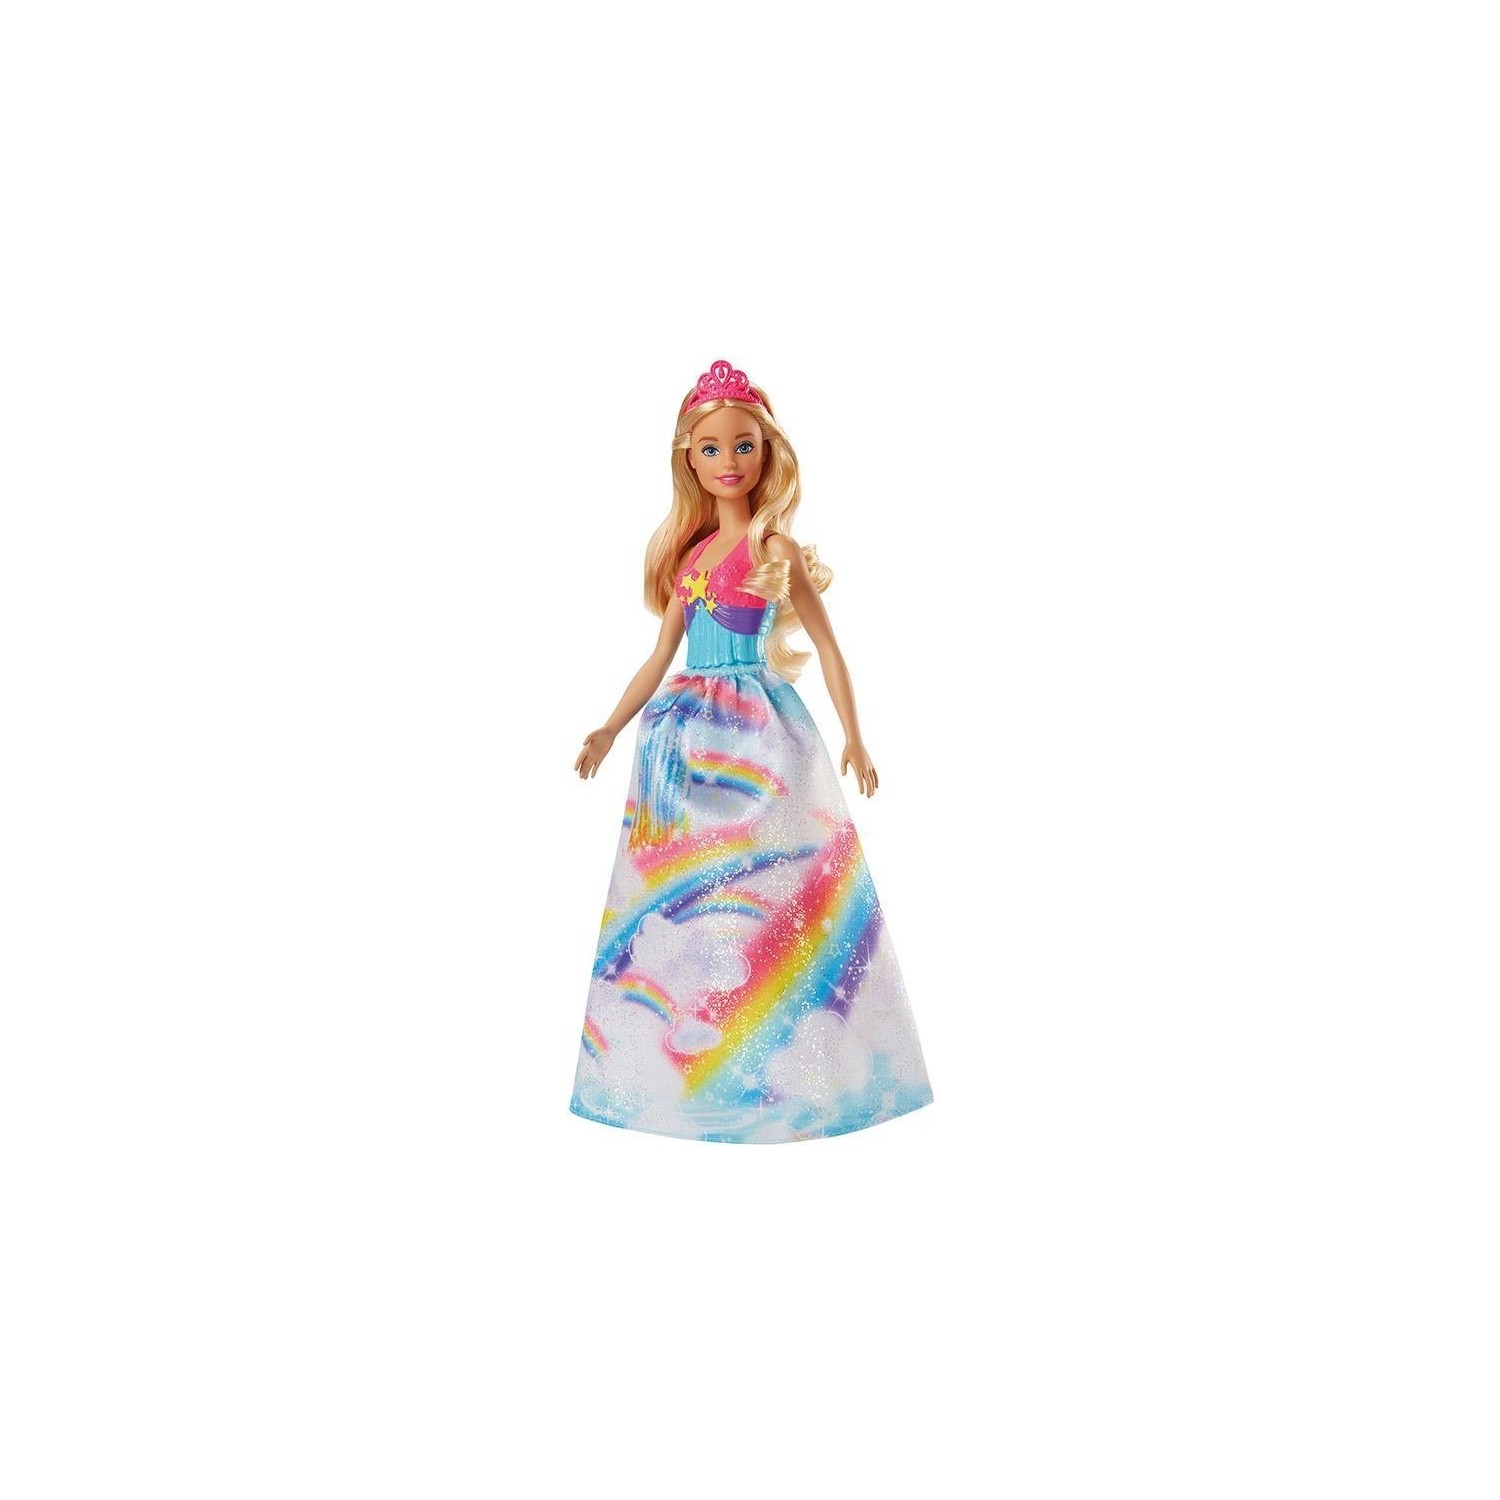 Кукла Barbie Dreamtopia Princess Dolls Fjc94